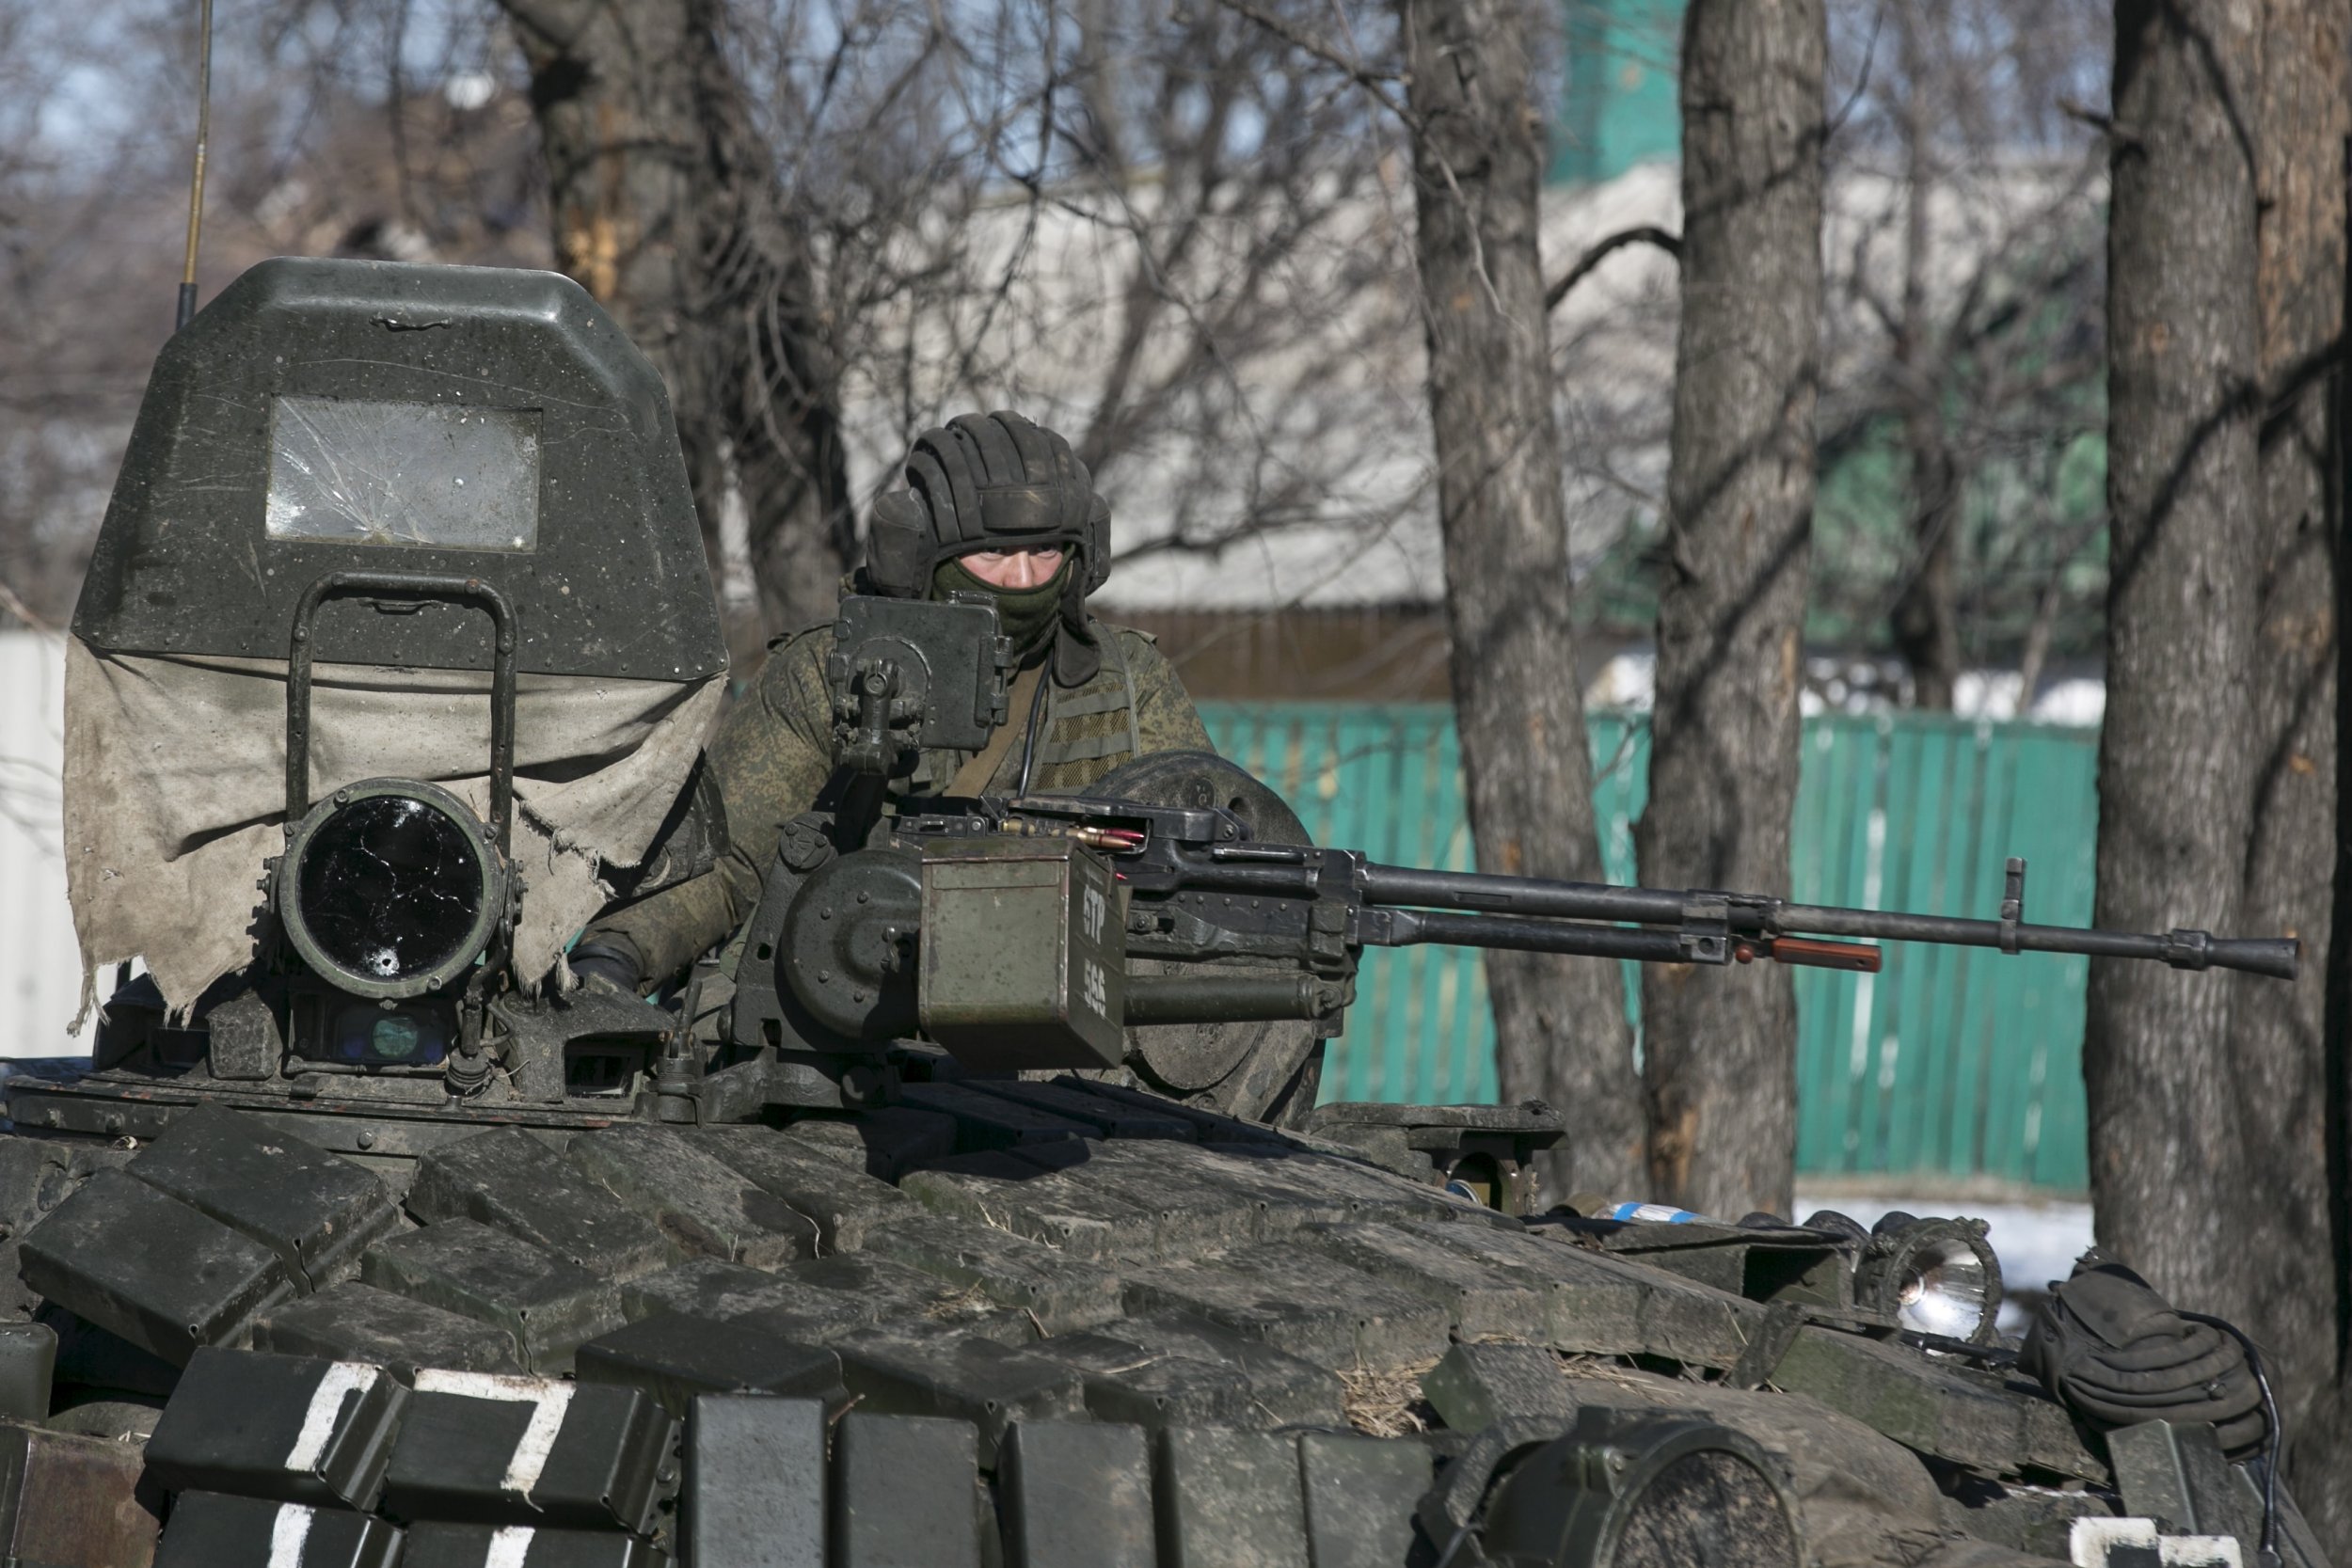 Σκληραίνει την στάση της η Ρωσία: «Θα μετακινούμε τα στρατεύματά μας όπου κρίνουμε εμείς – Η Ουκρανία να μην προκαλεί»